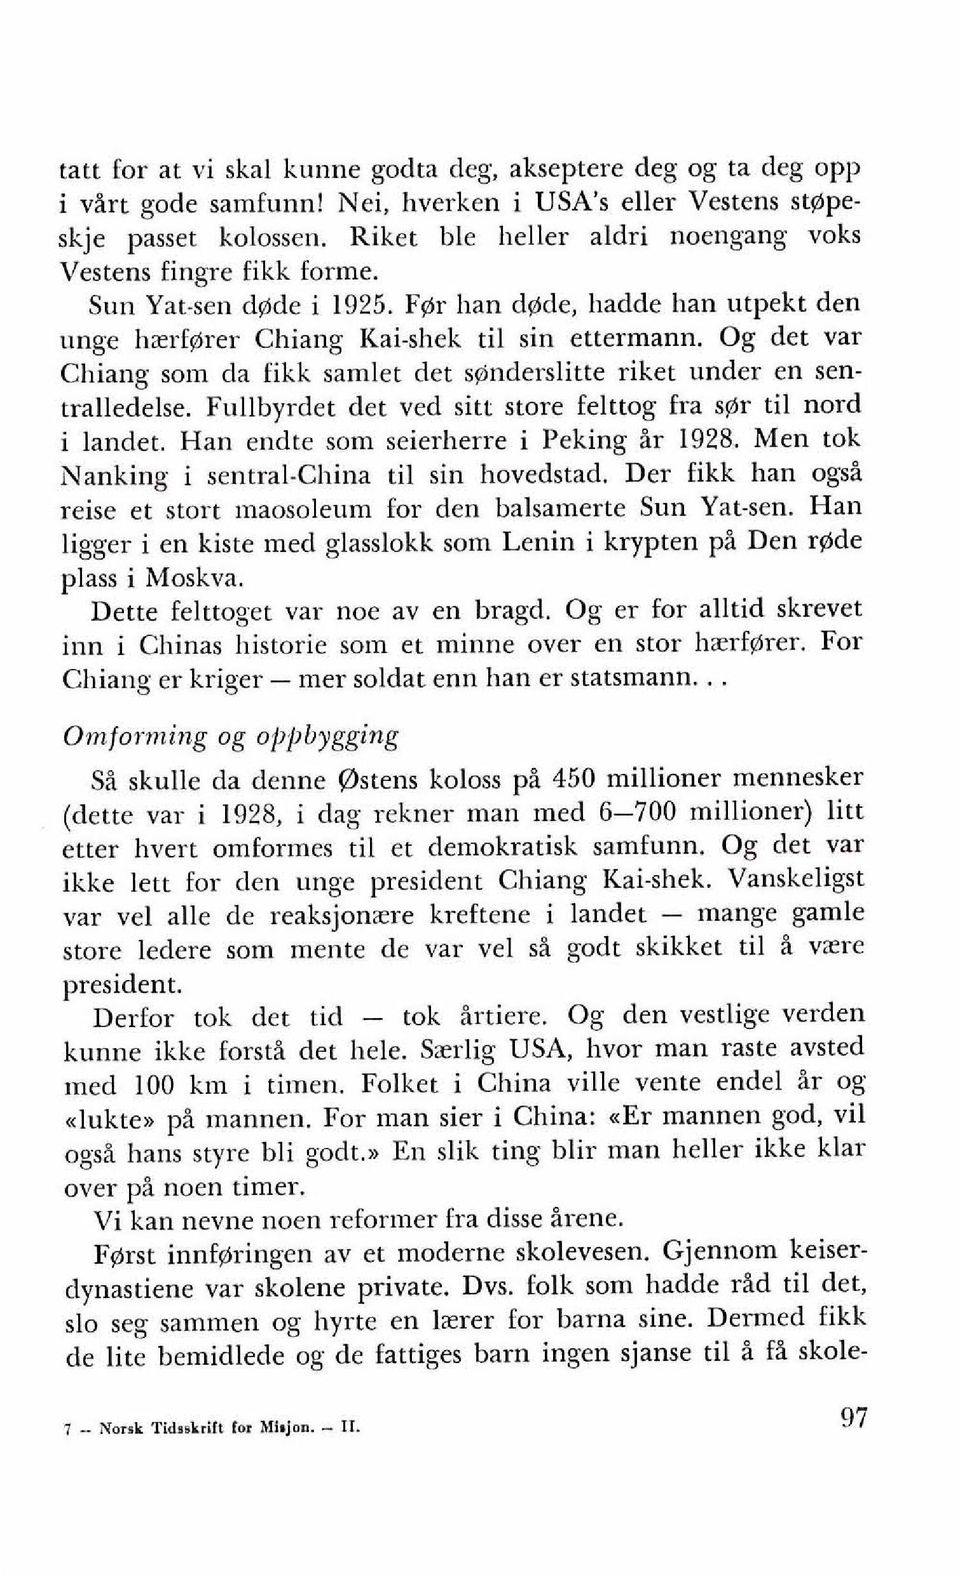 Og det var Chiang som da fikk samlet det s@nderslitte riket under en sentralledelse. Fullbyrdet det ved sitr store felttog fra s@r ti1 nord i landet. Han endte som seierherre i Peking ir 1928.